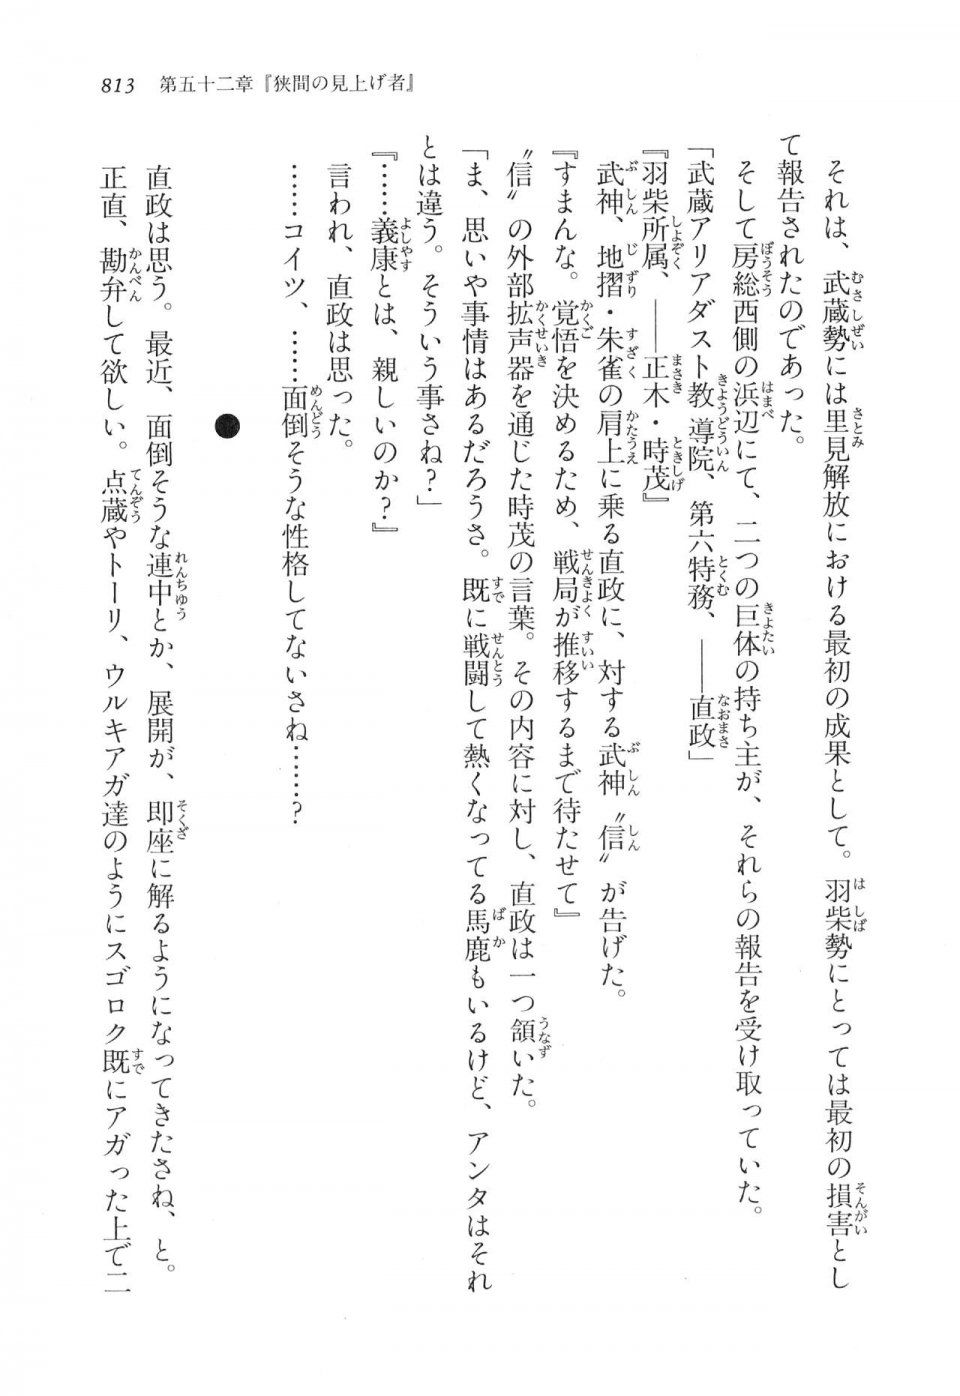 Kyoukai Senjou no Horizon LN Vol 17(7B) - Photo #815